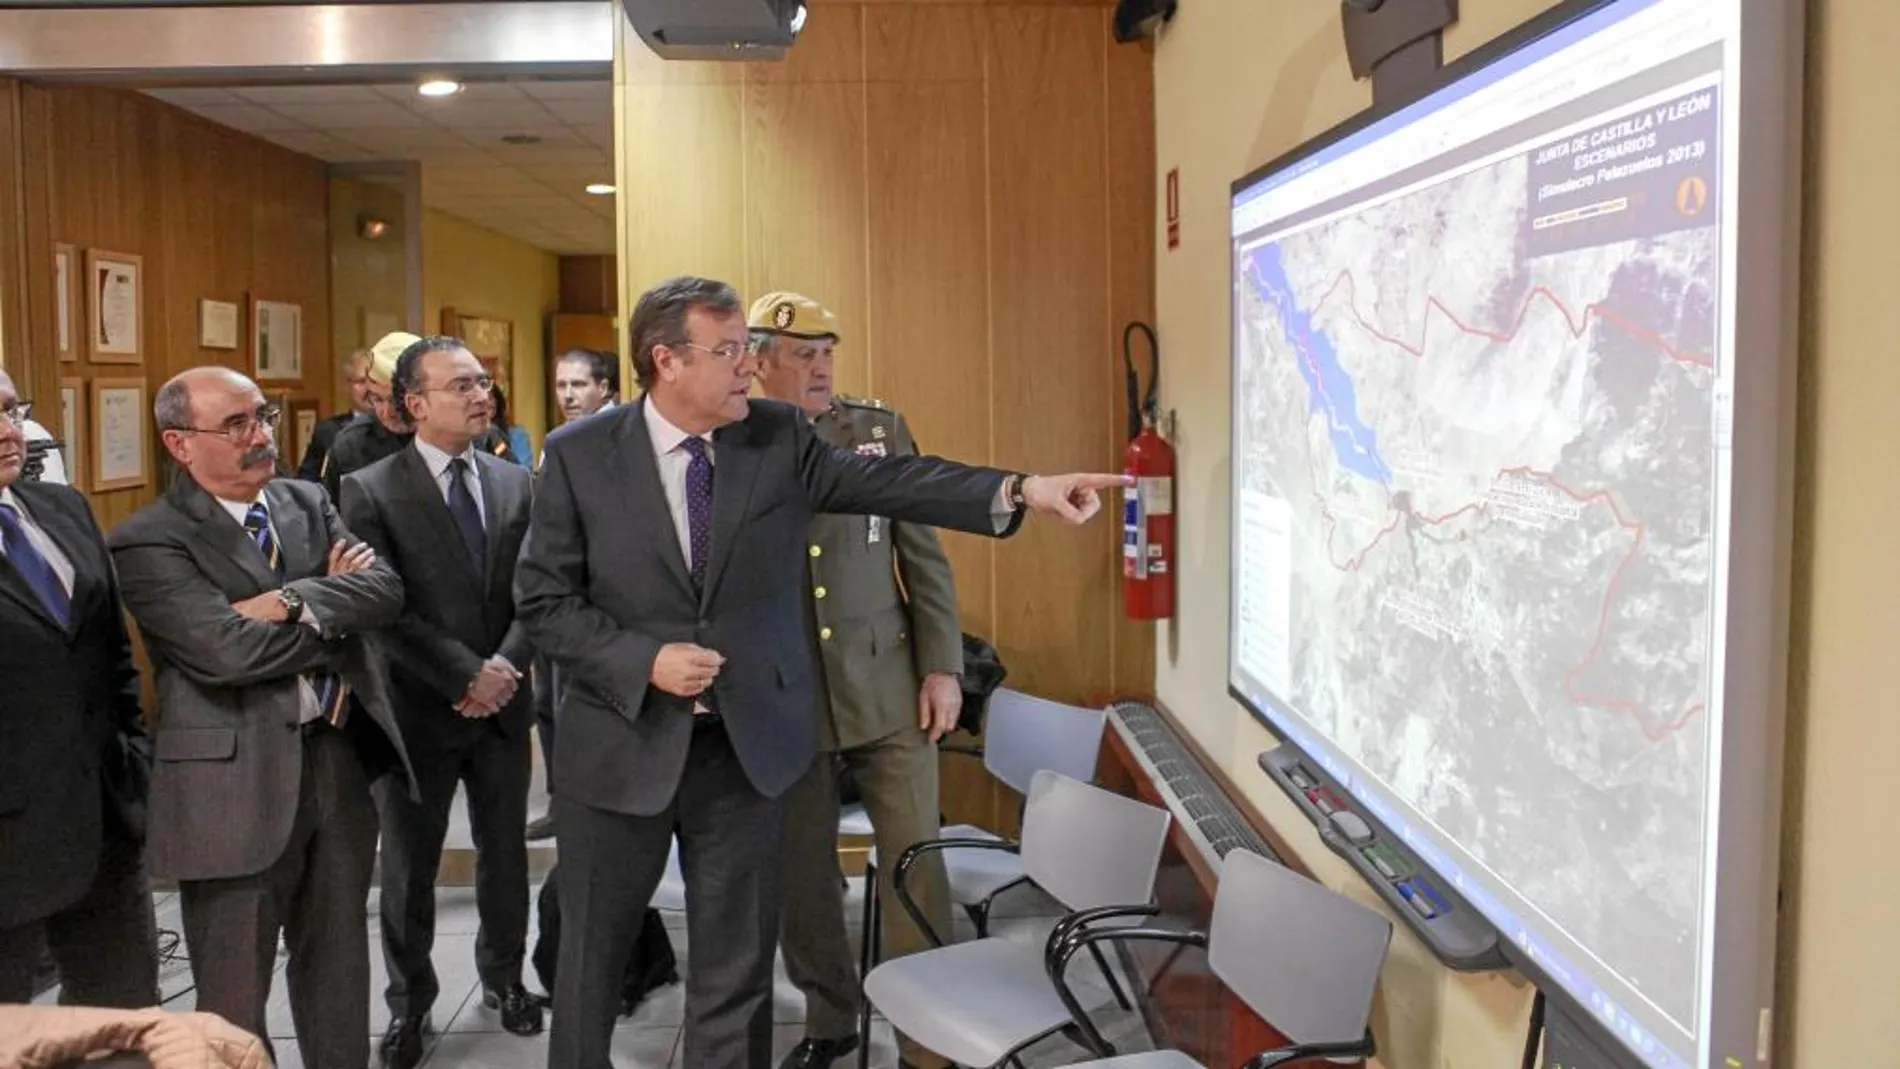 Antonio Silván observa junto al militar Alberto Asarta el mapa en el que se muestra la zona del simulacro